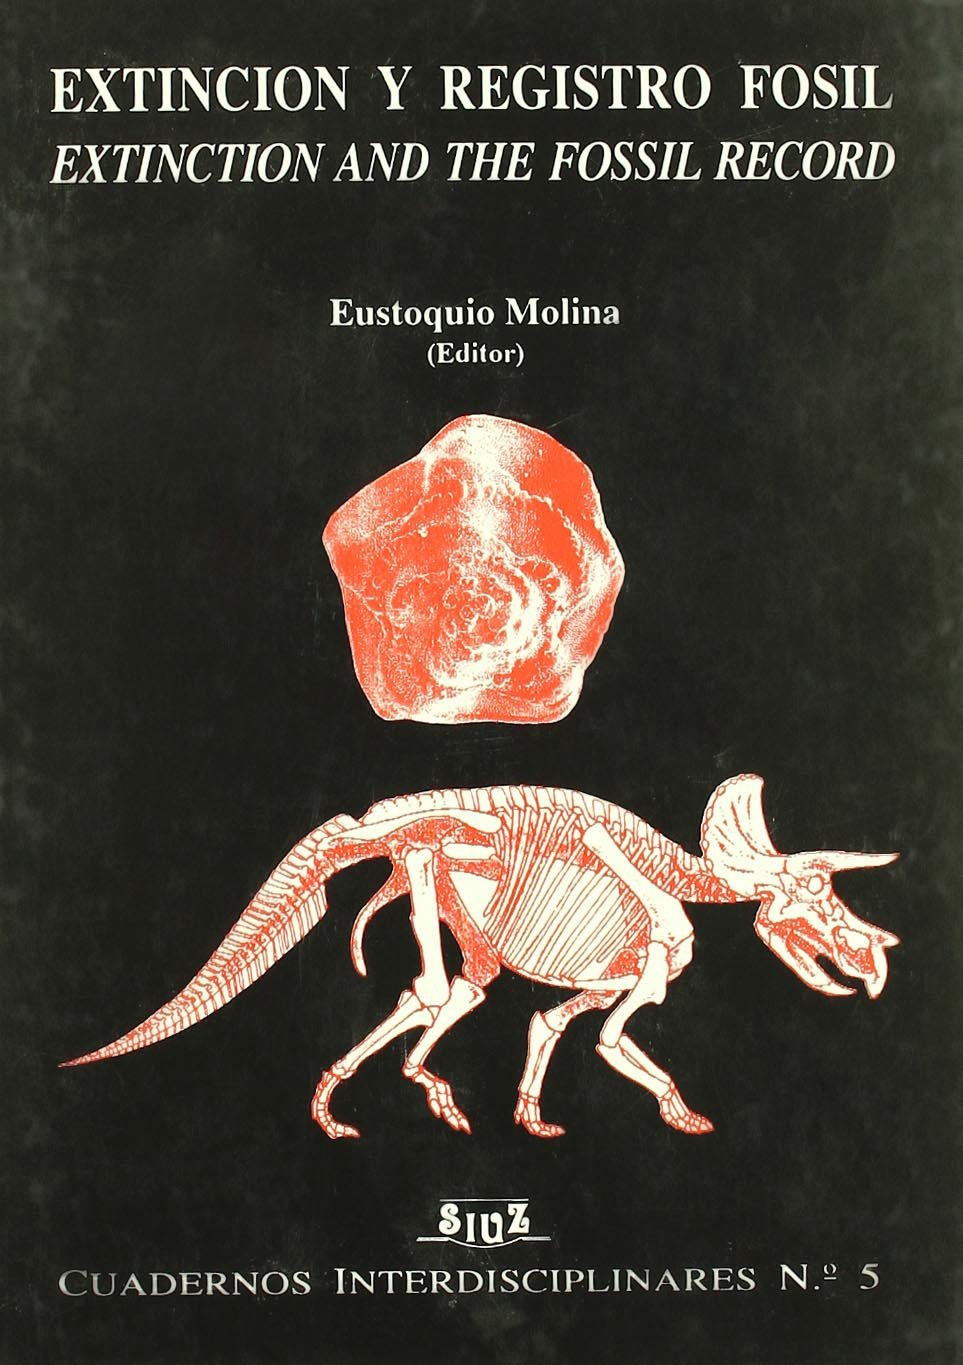 Imagen de portada del libro Extinción y registro fósil